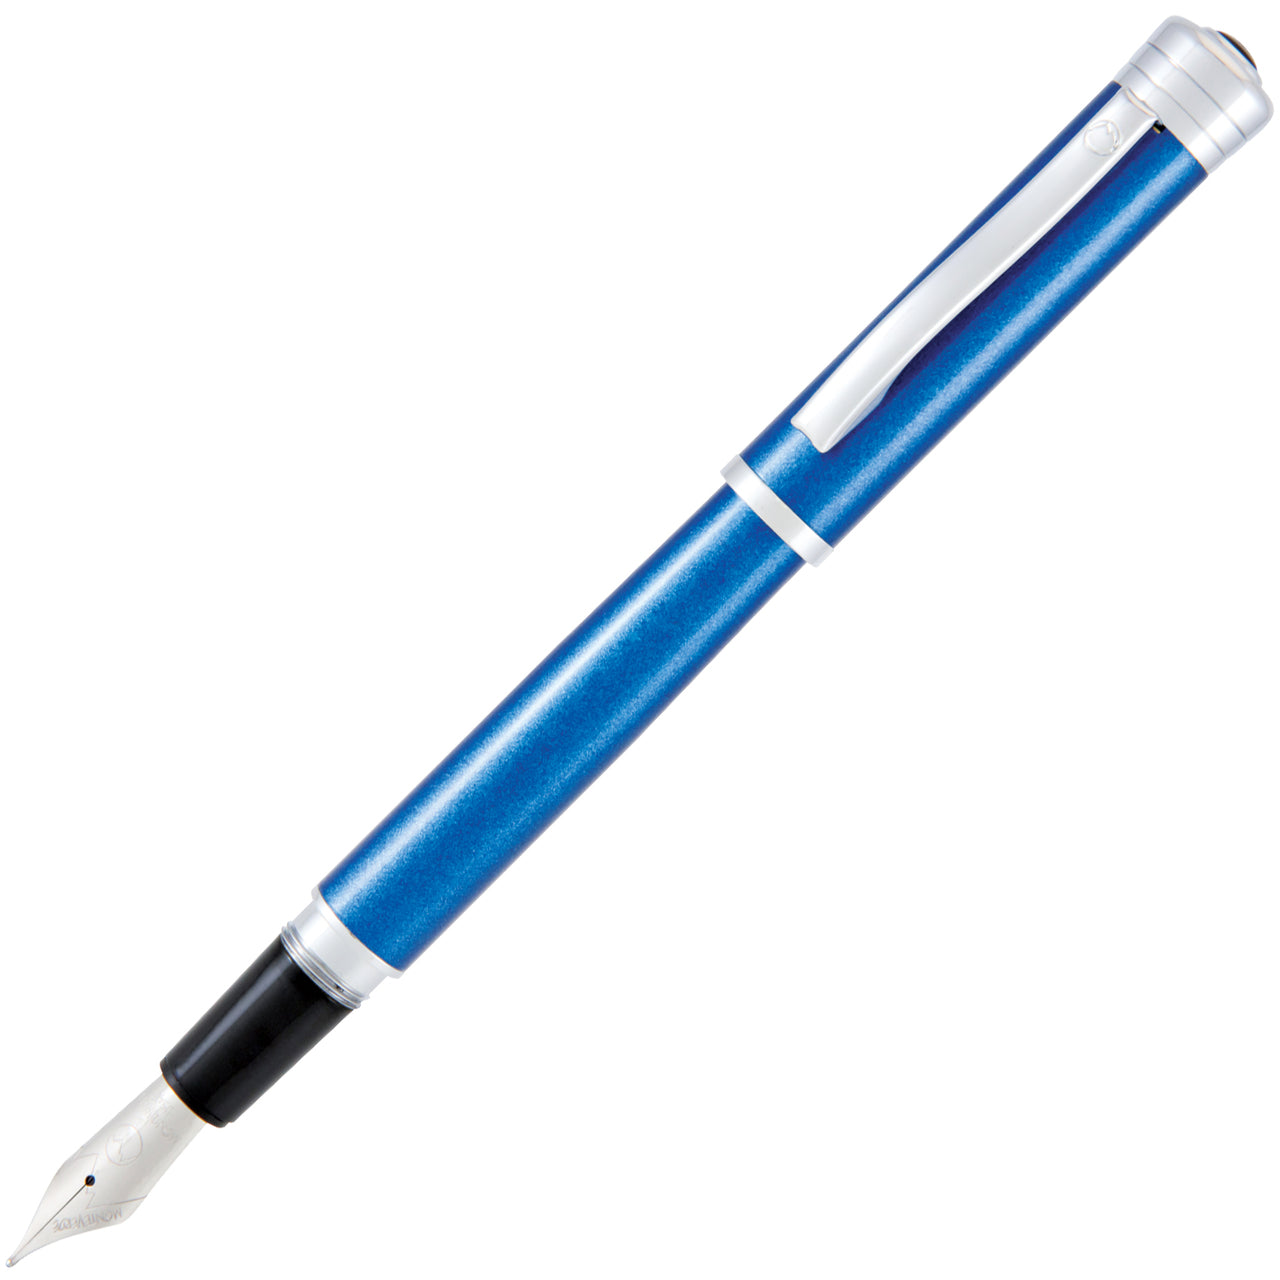 Monteverde Strata Blue Fountain Pen | Pen Store | Pen Place Since 1968